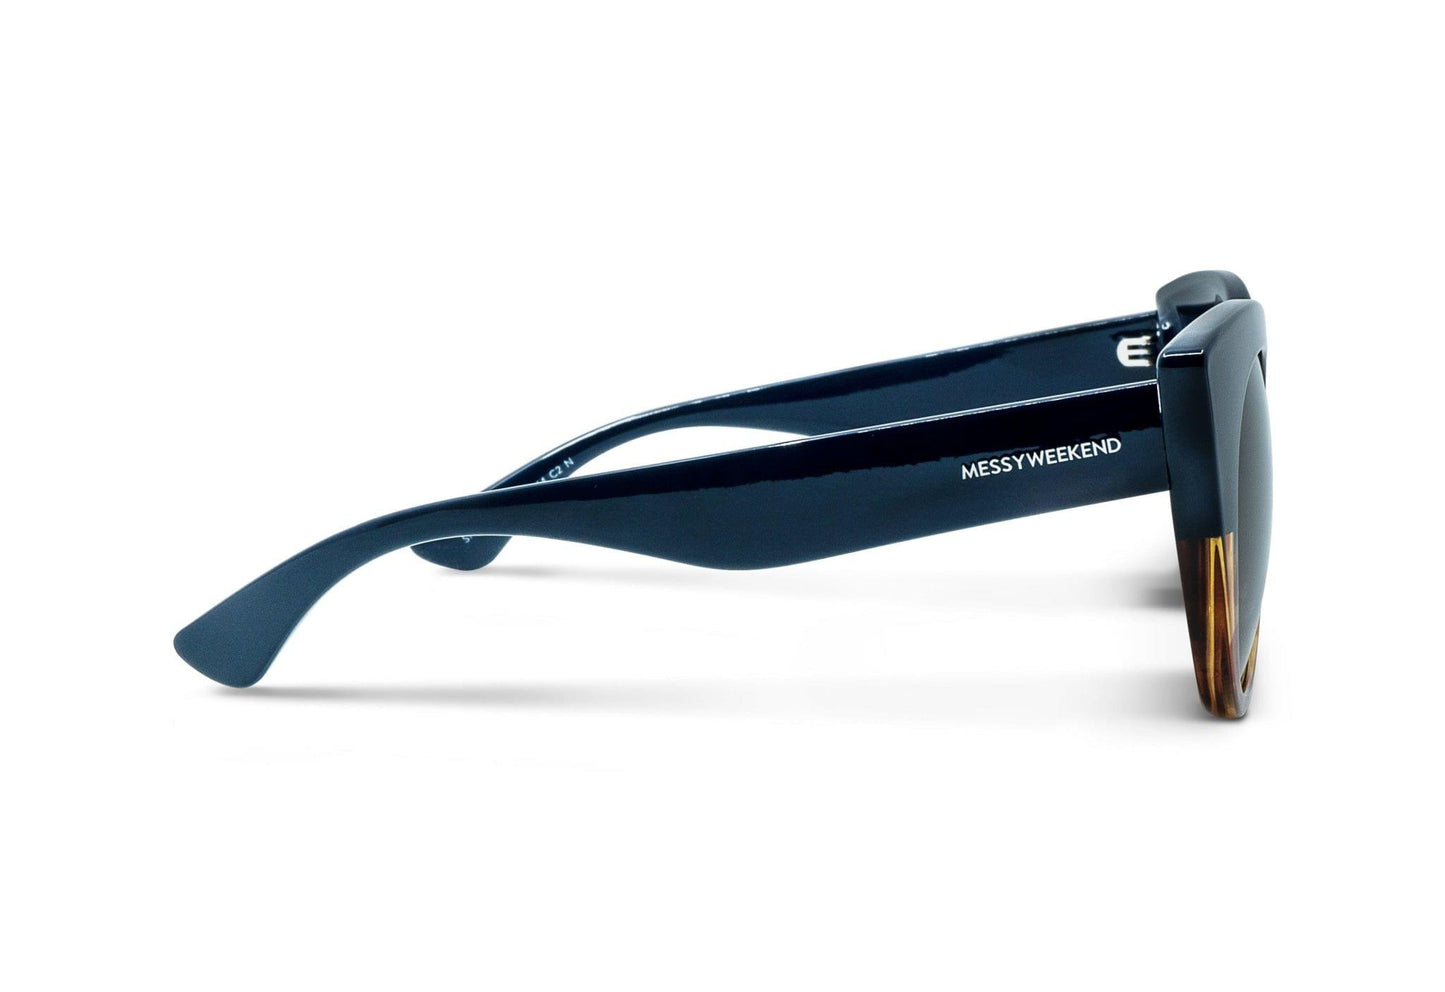 Thelma, Cat eye sunglasses for women dark green Frame UV400 protection